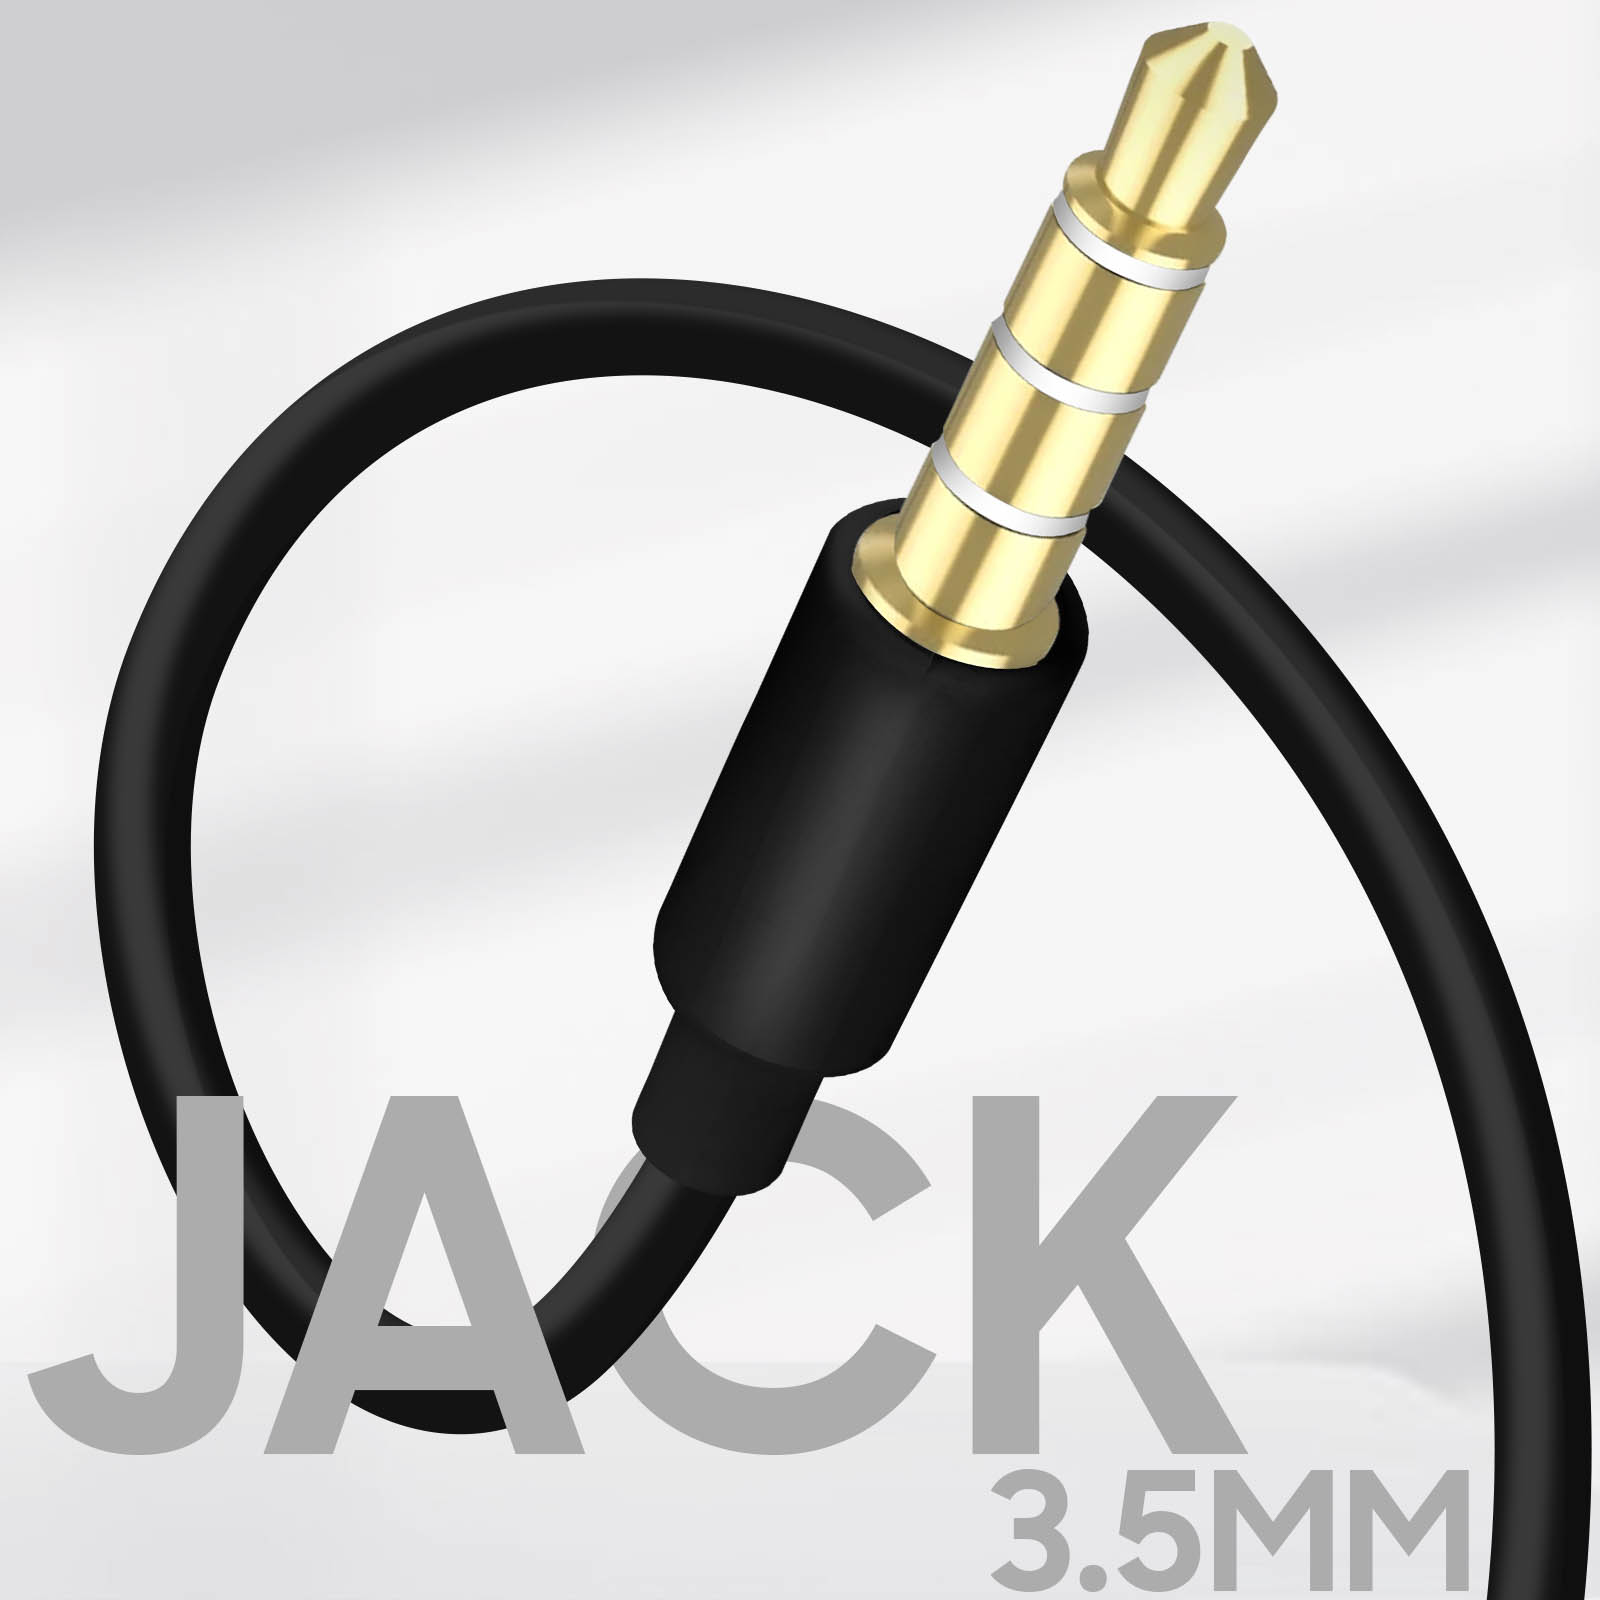 Écouteurs anti-noeuds avec micro et télécommande - prise jack 3.5 – Blanc -  Français